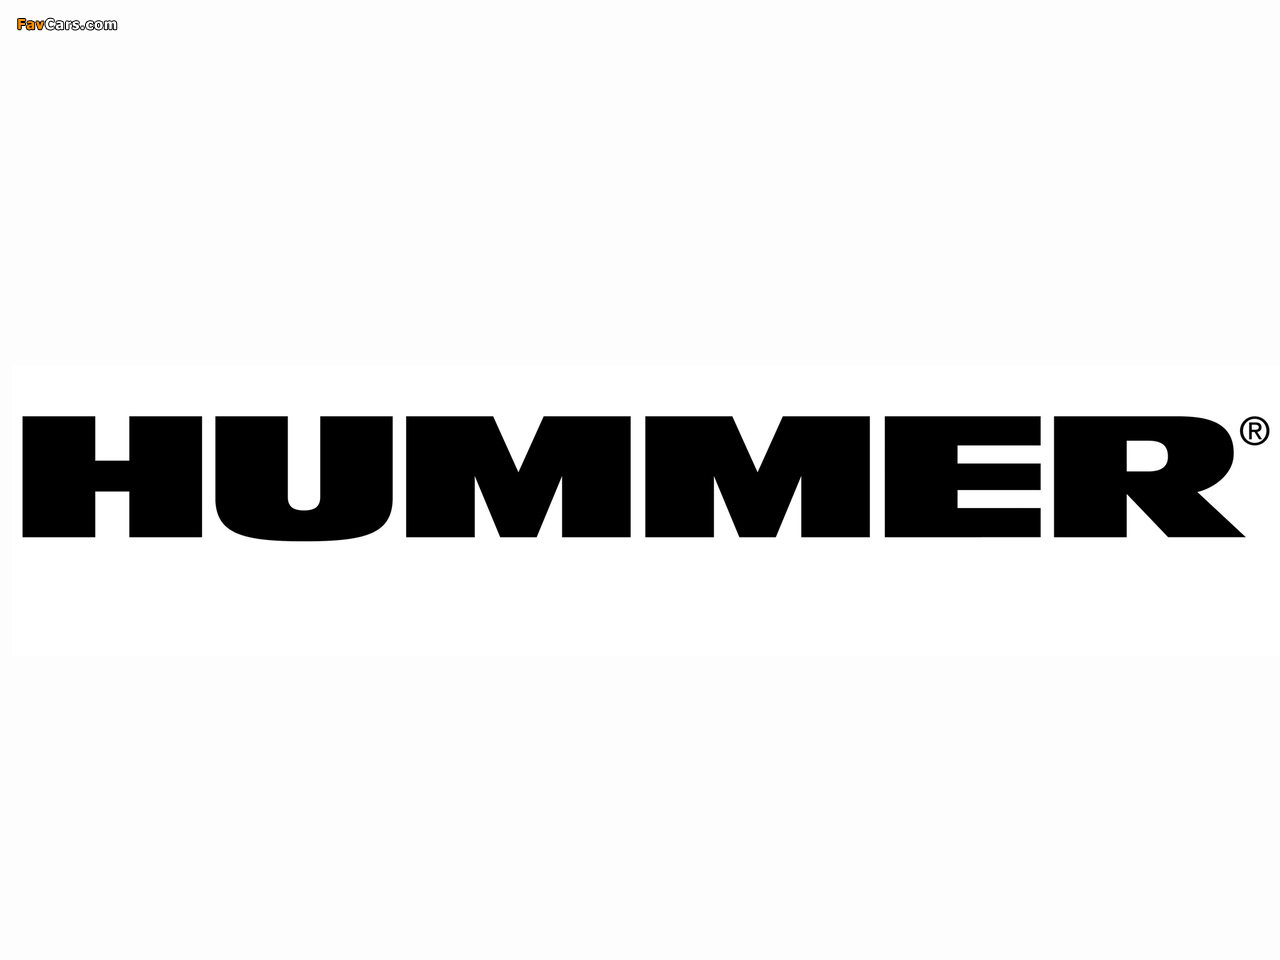 Hummer images (1280 x 960)